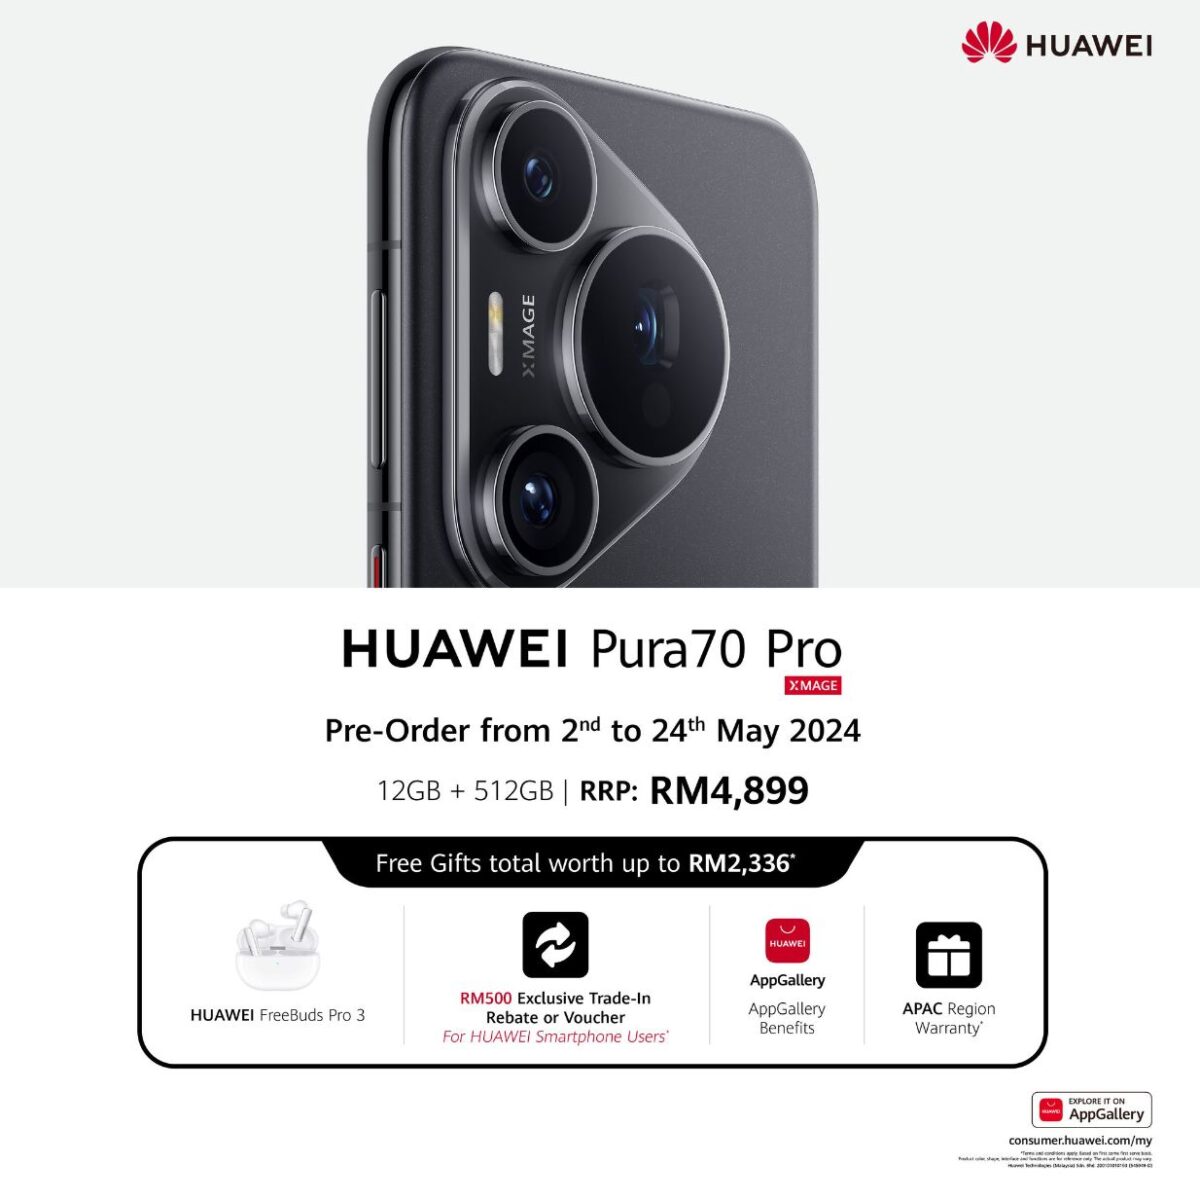 HUAWEI Pura70 Pro